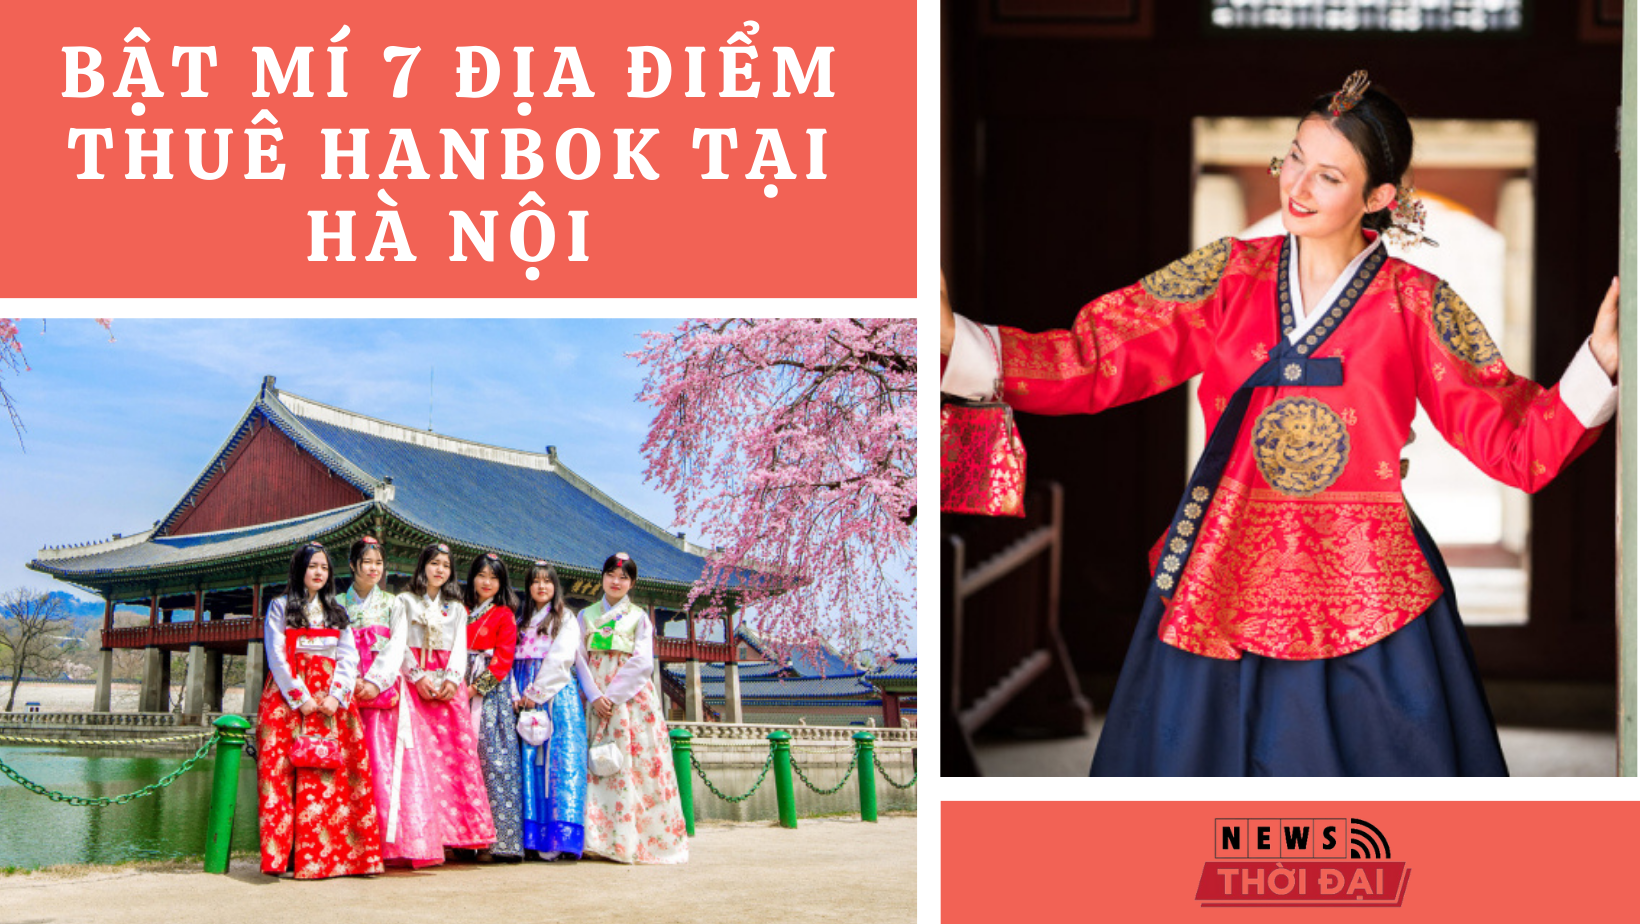 Bật mí 7 Địa điểm thuê hanbok tại Hà Nội